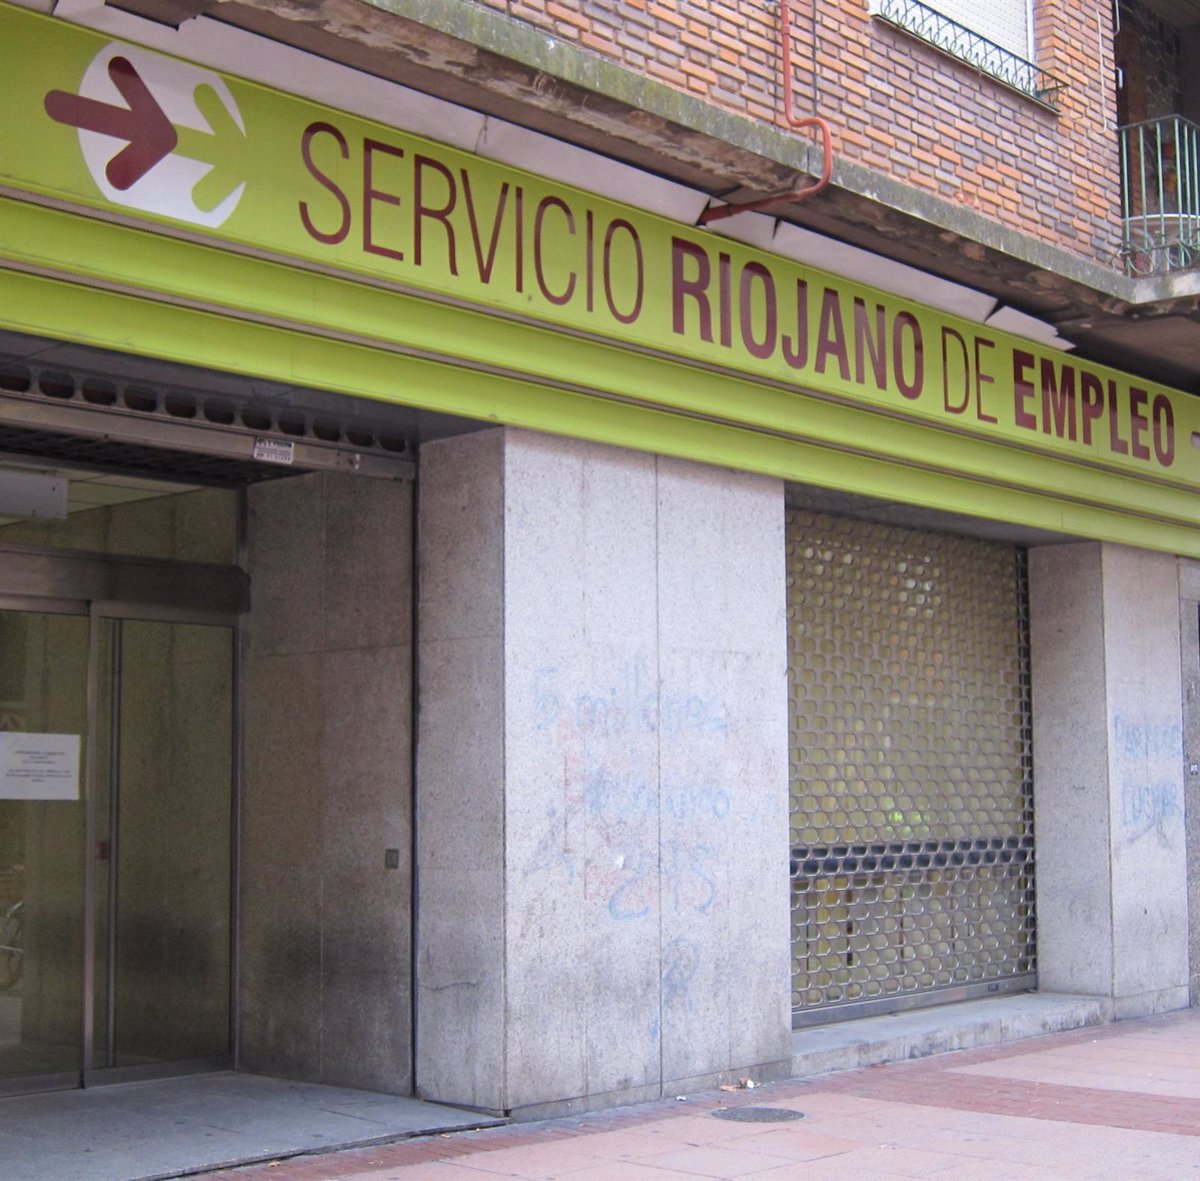 El Gobierno riojano ampliará y reformará las oficinas del Servicio Riojano de Empleo